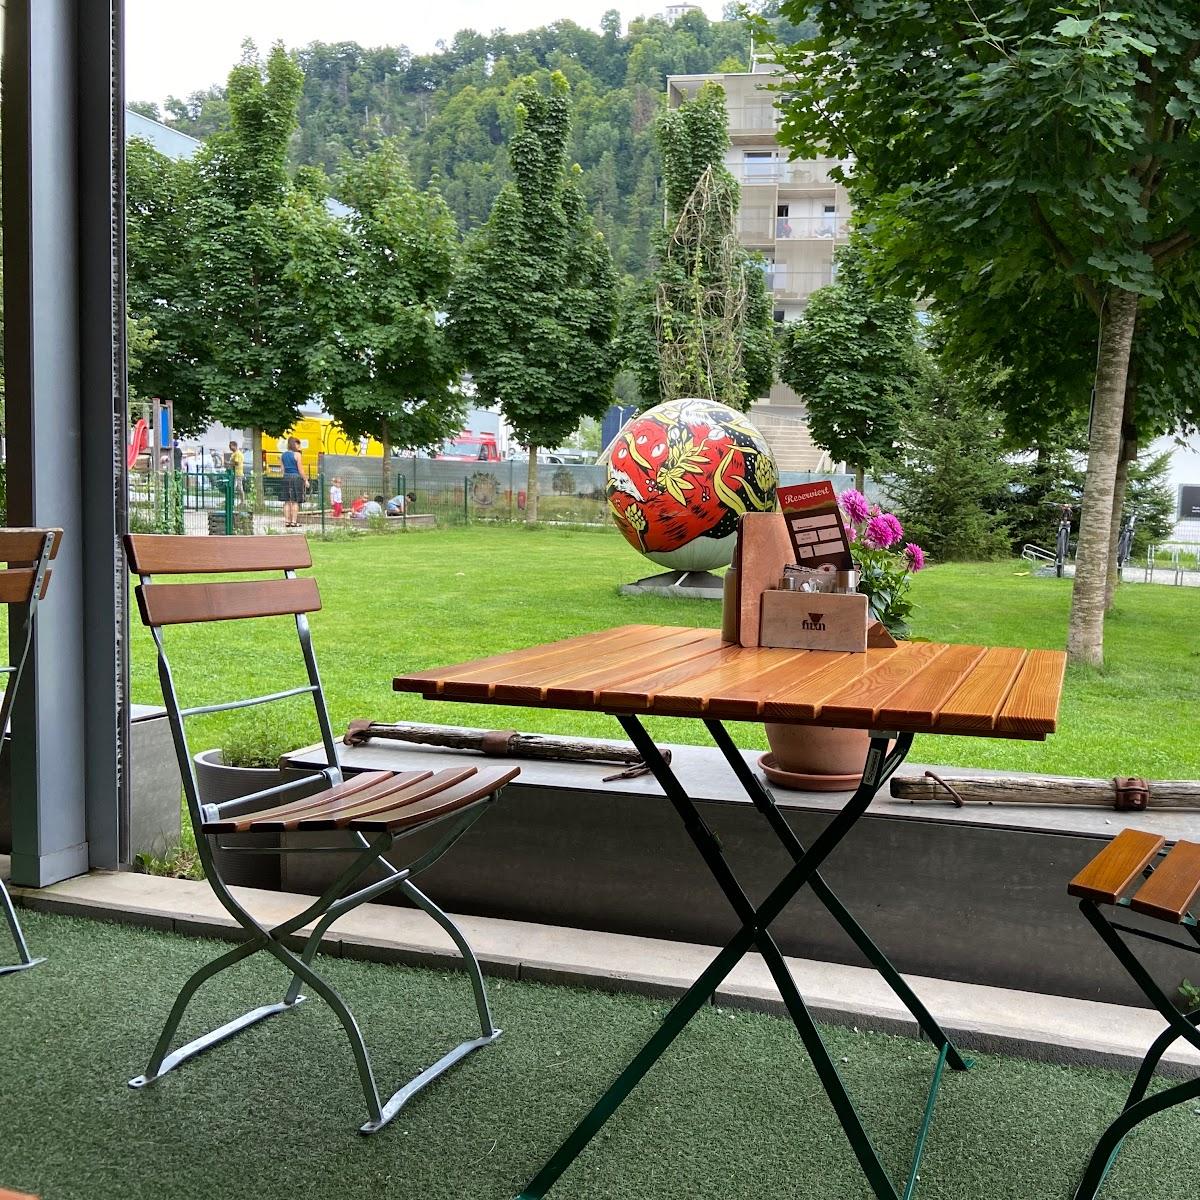 Restaurant "Fuxn" in Salzburg